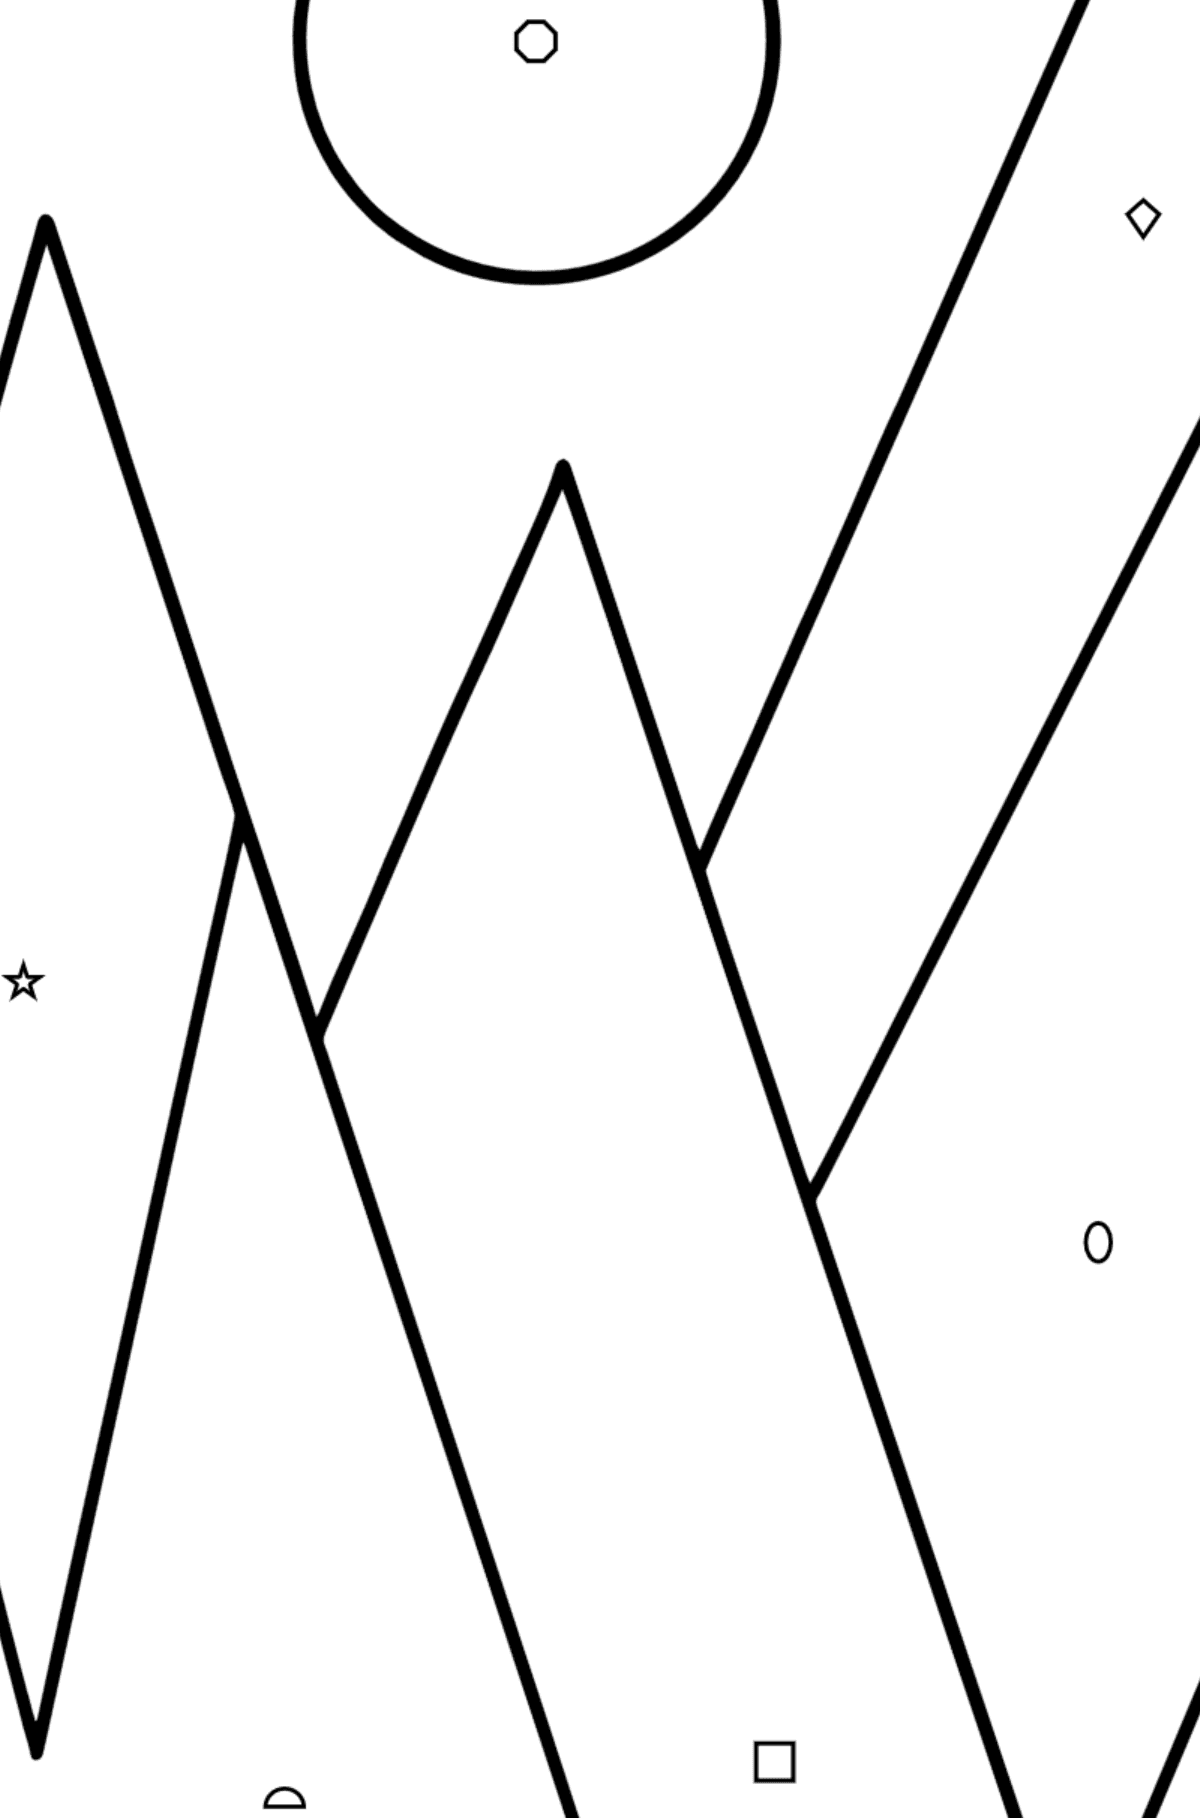 Omalovánka geometrické tvary - hory - Omalovánka podle Geometrických tvarů pro děti